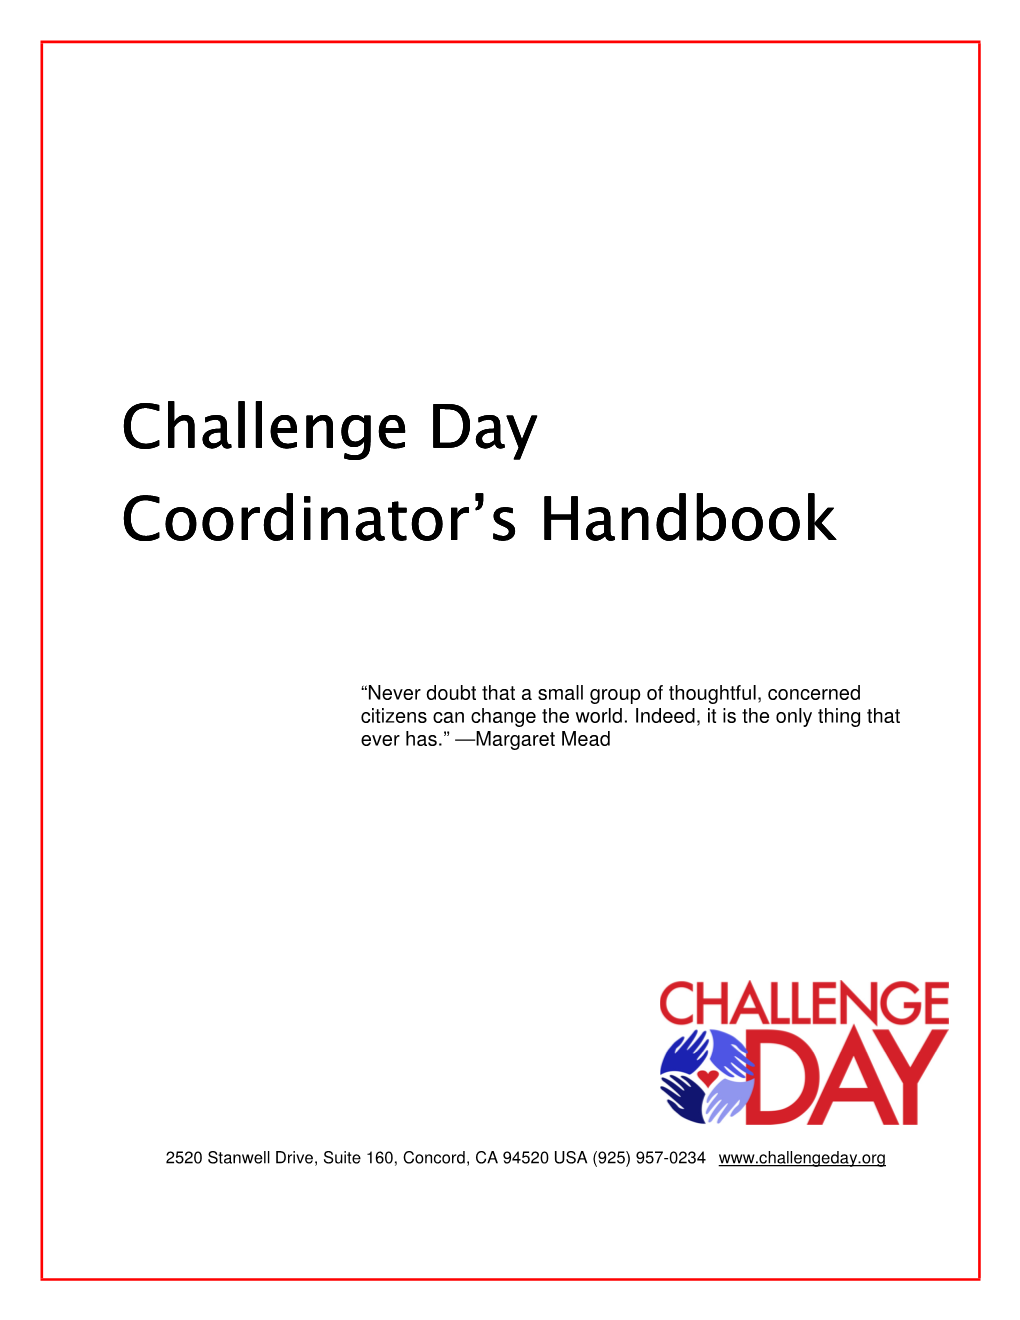 Challenge Day Coordinators Handbook